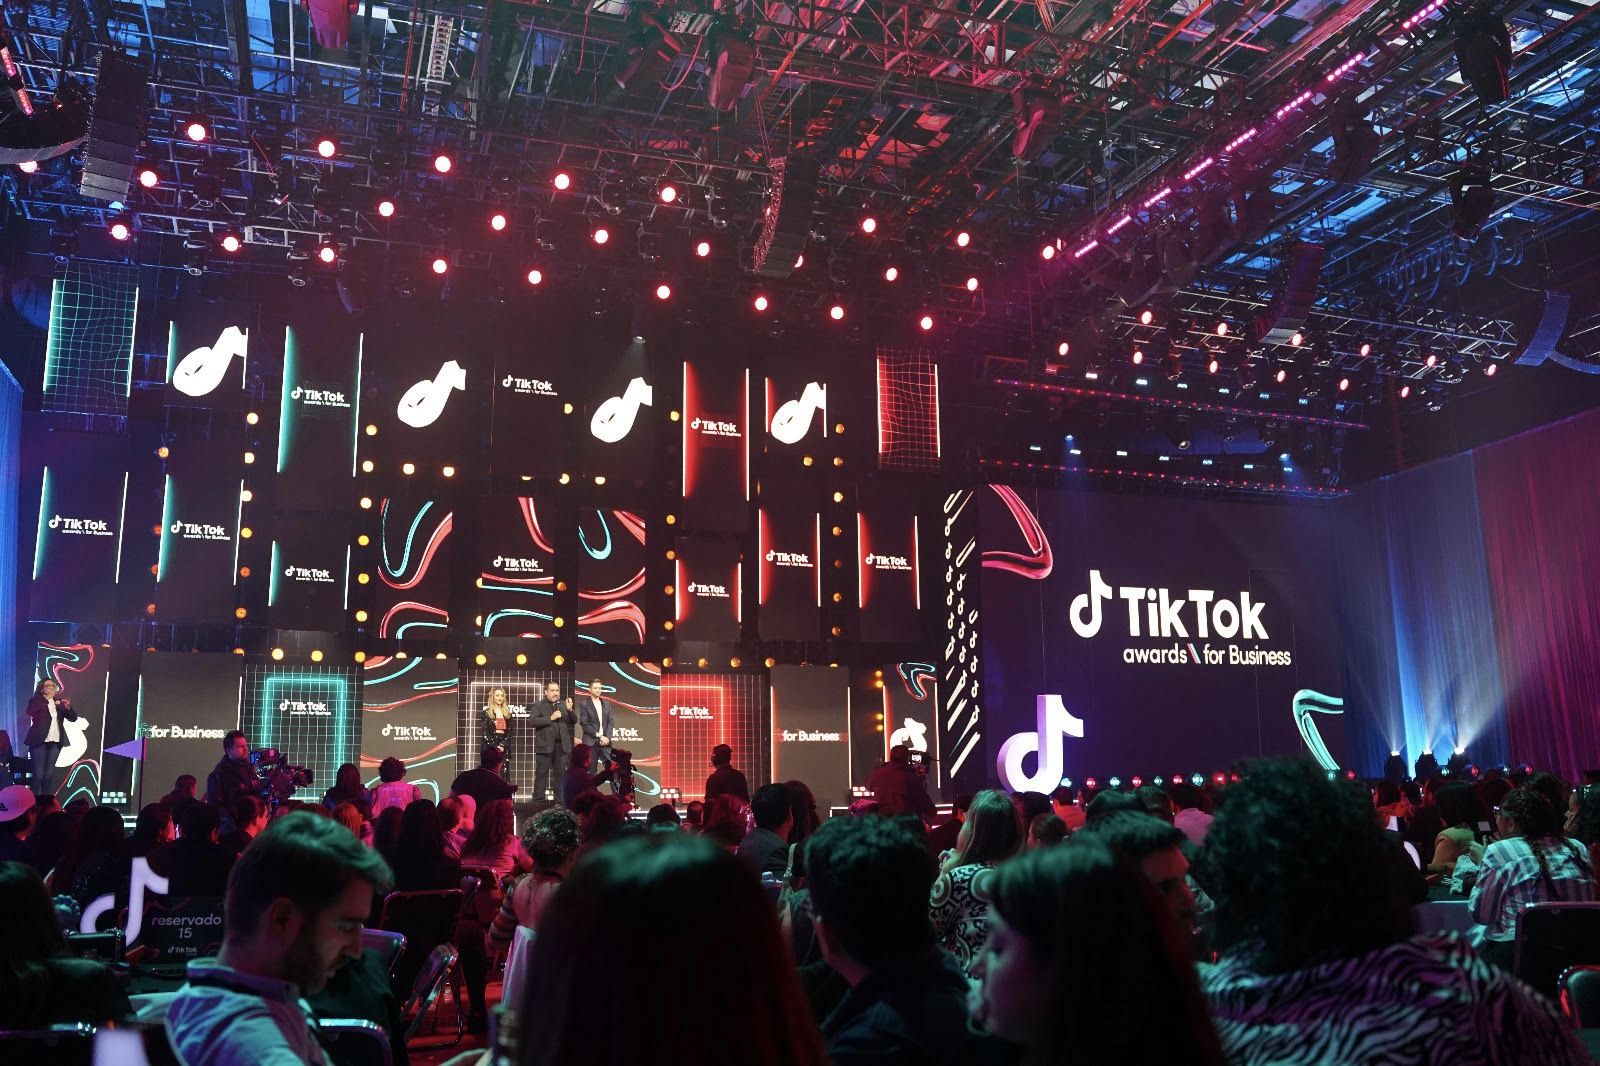 Compañía Minera Cuzcatlán hace historia al ser finalista en los TikTok Awards for Business